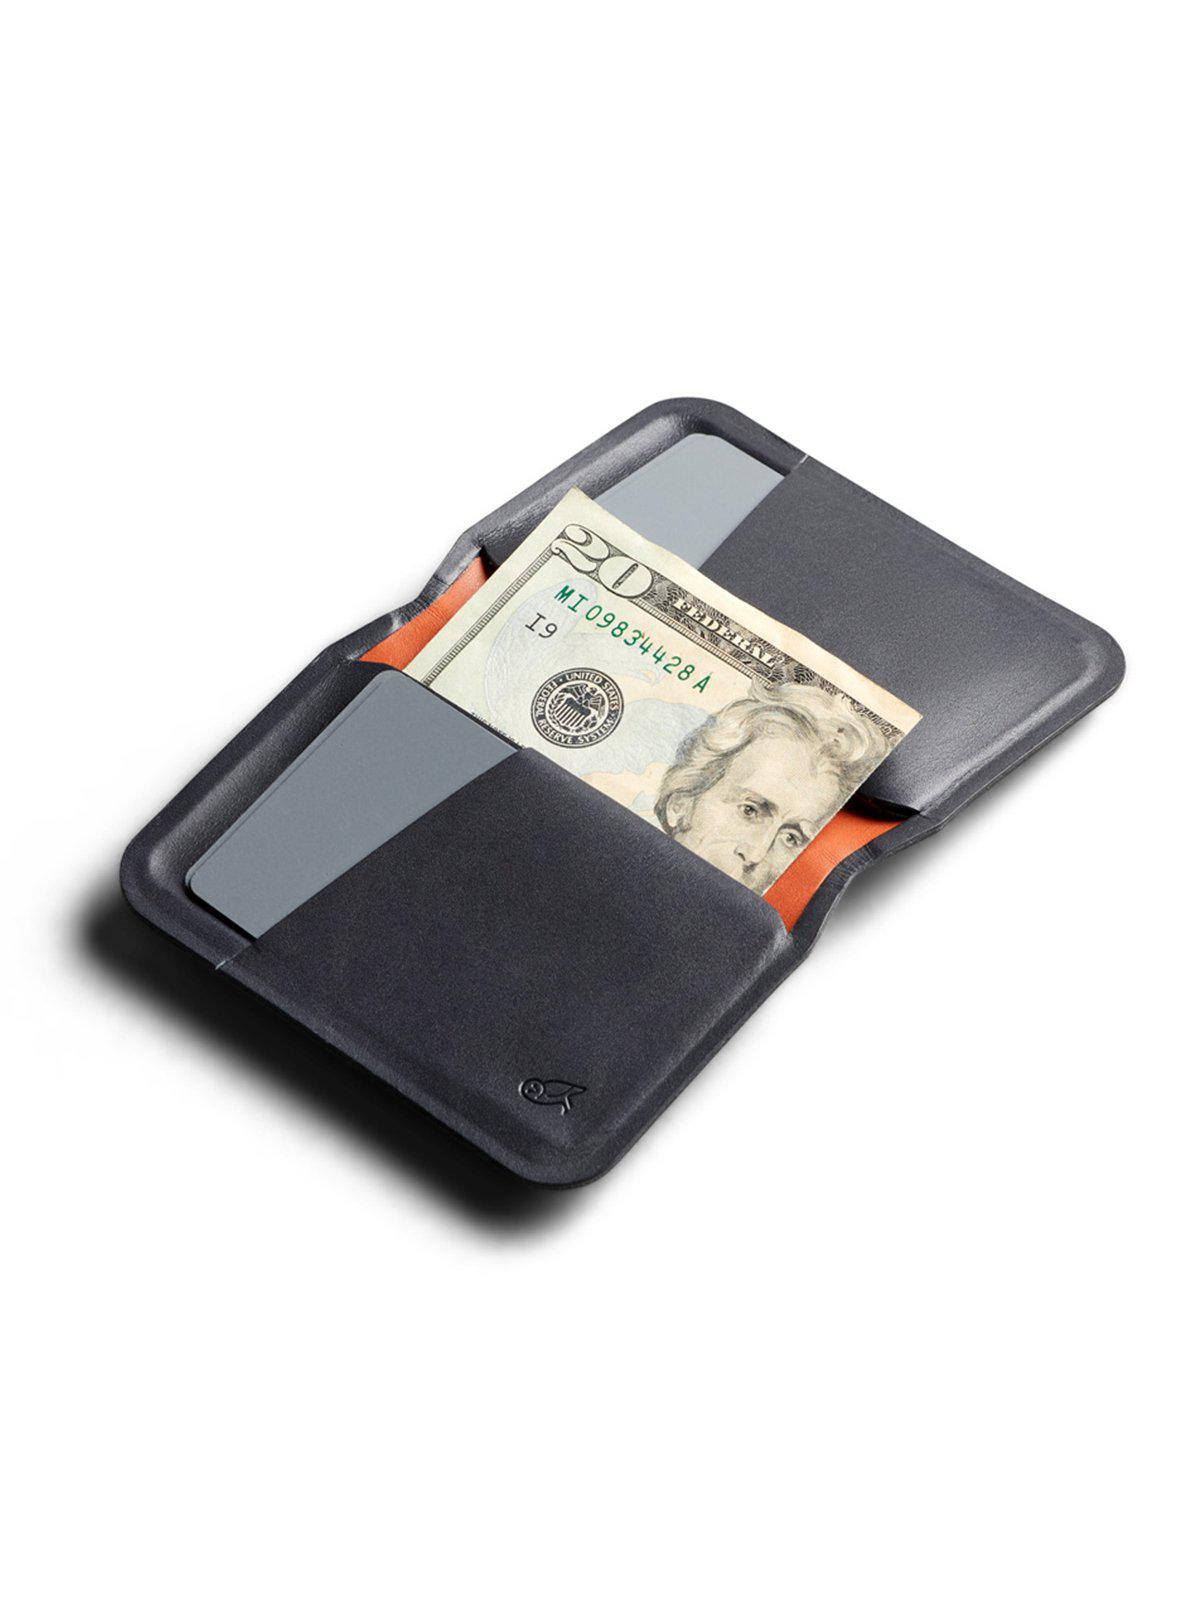 Bellroy APEX Slim Sleeve Wallet Onyx RFID